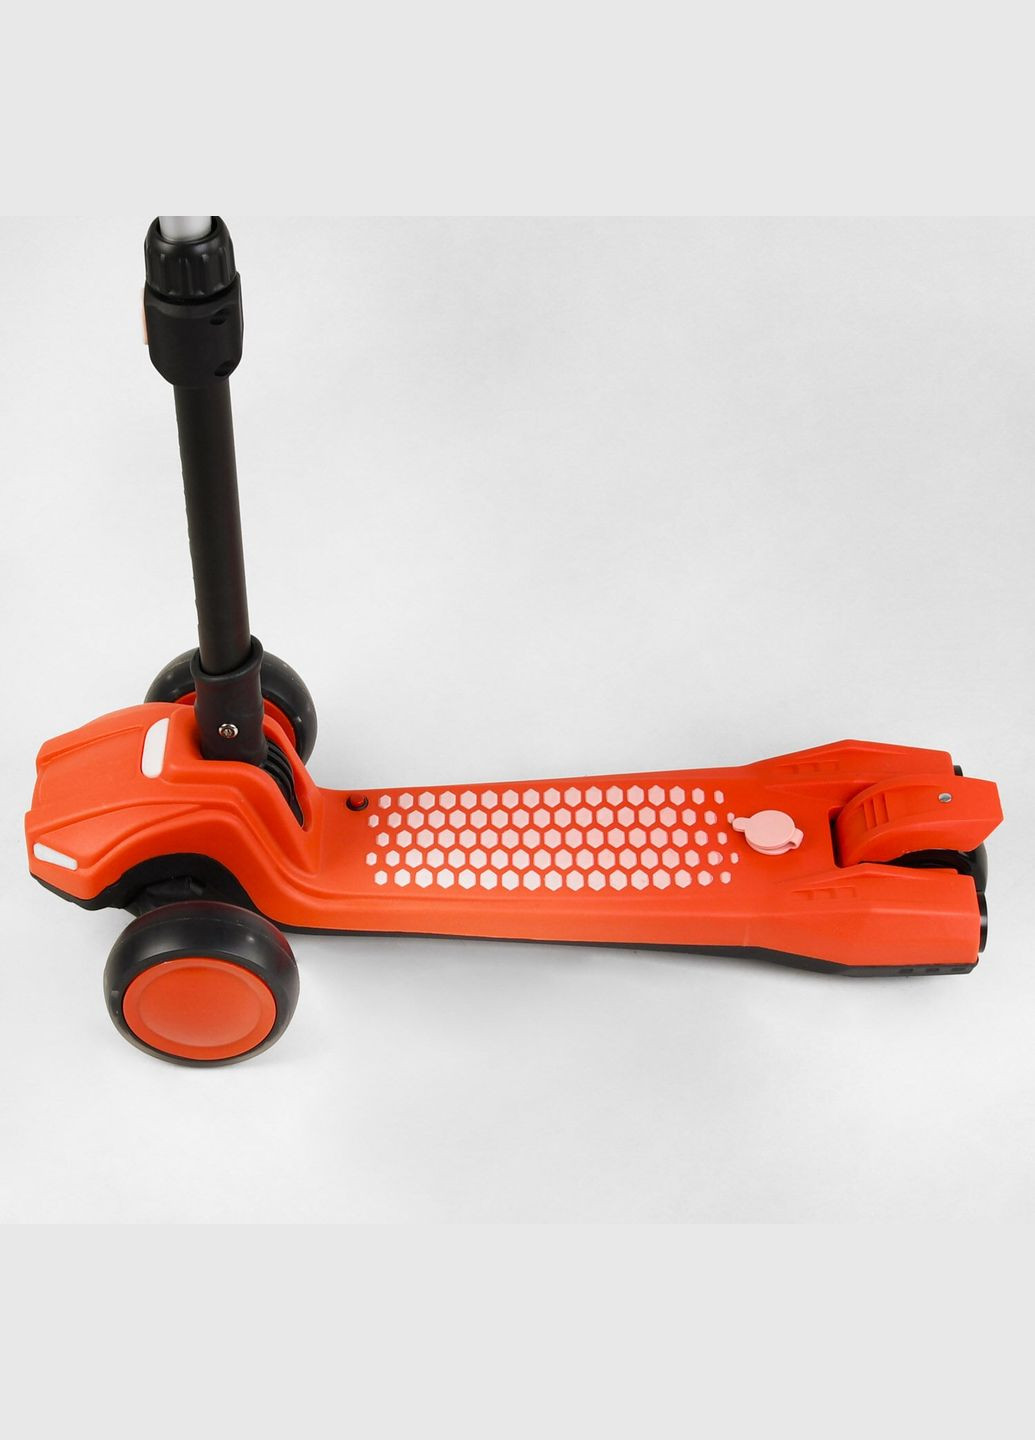 Детский самокат LT-12857. Парогенератор, звук машины, свет, музыка, 3 PU колеса. Оранжевый Best Scooter (293818625)